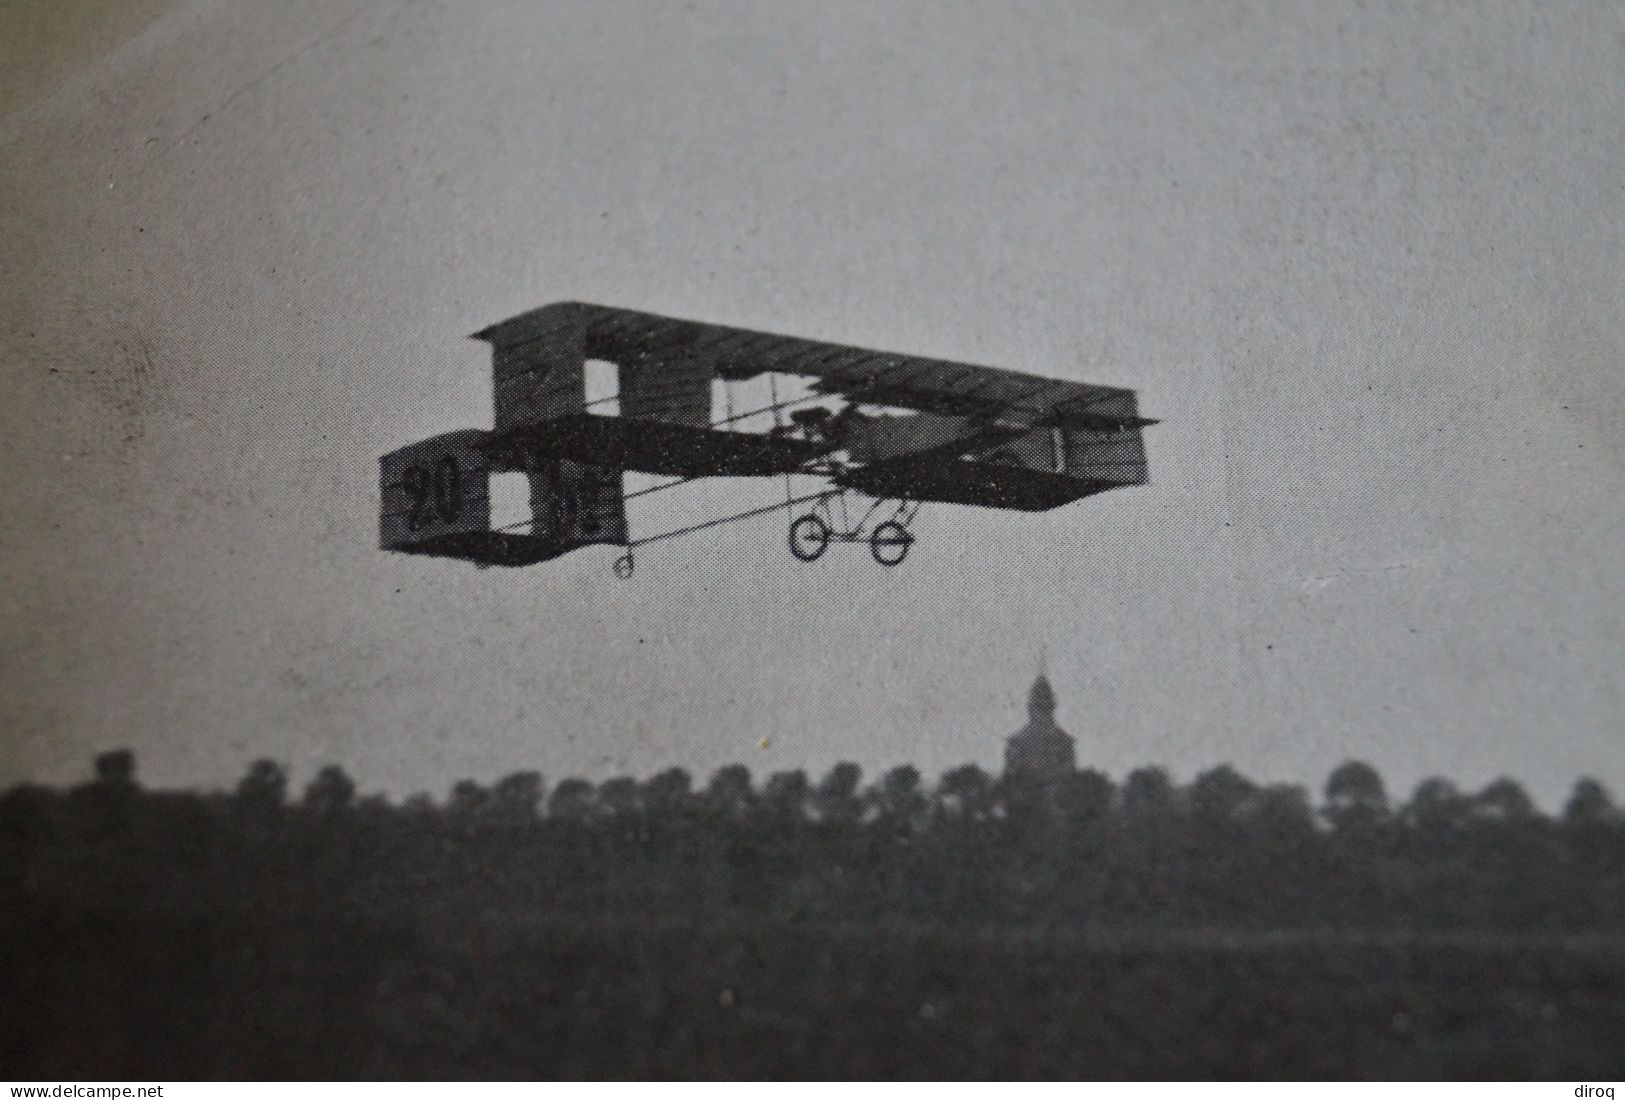 Aviation ,avion,aéroplane,ancienne Carte Photo Originale, Pour Collection - ....-1914: Précurseurs